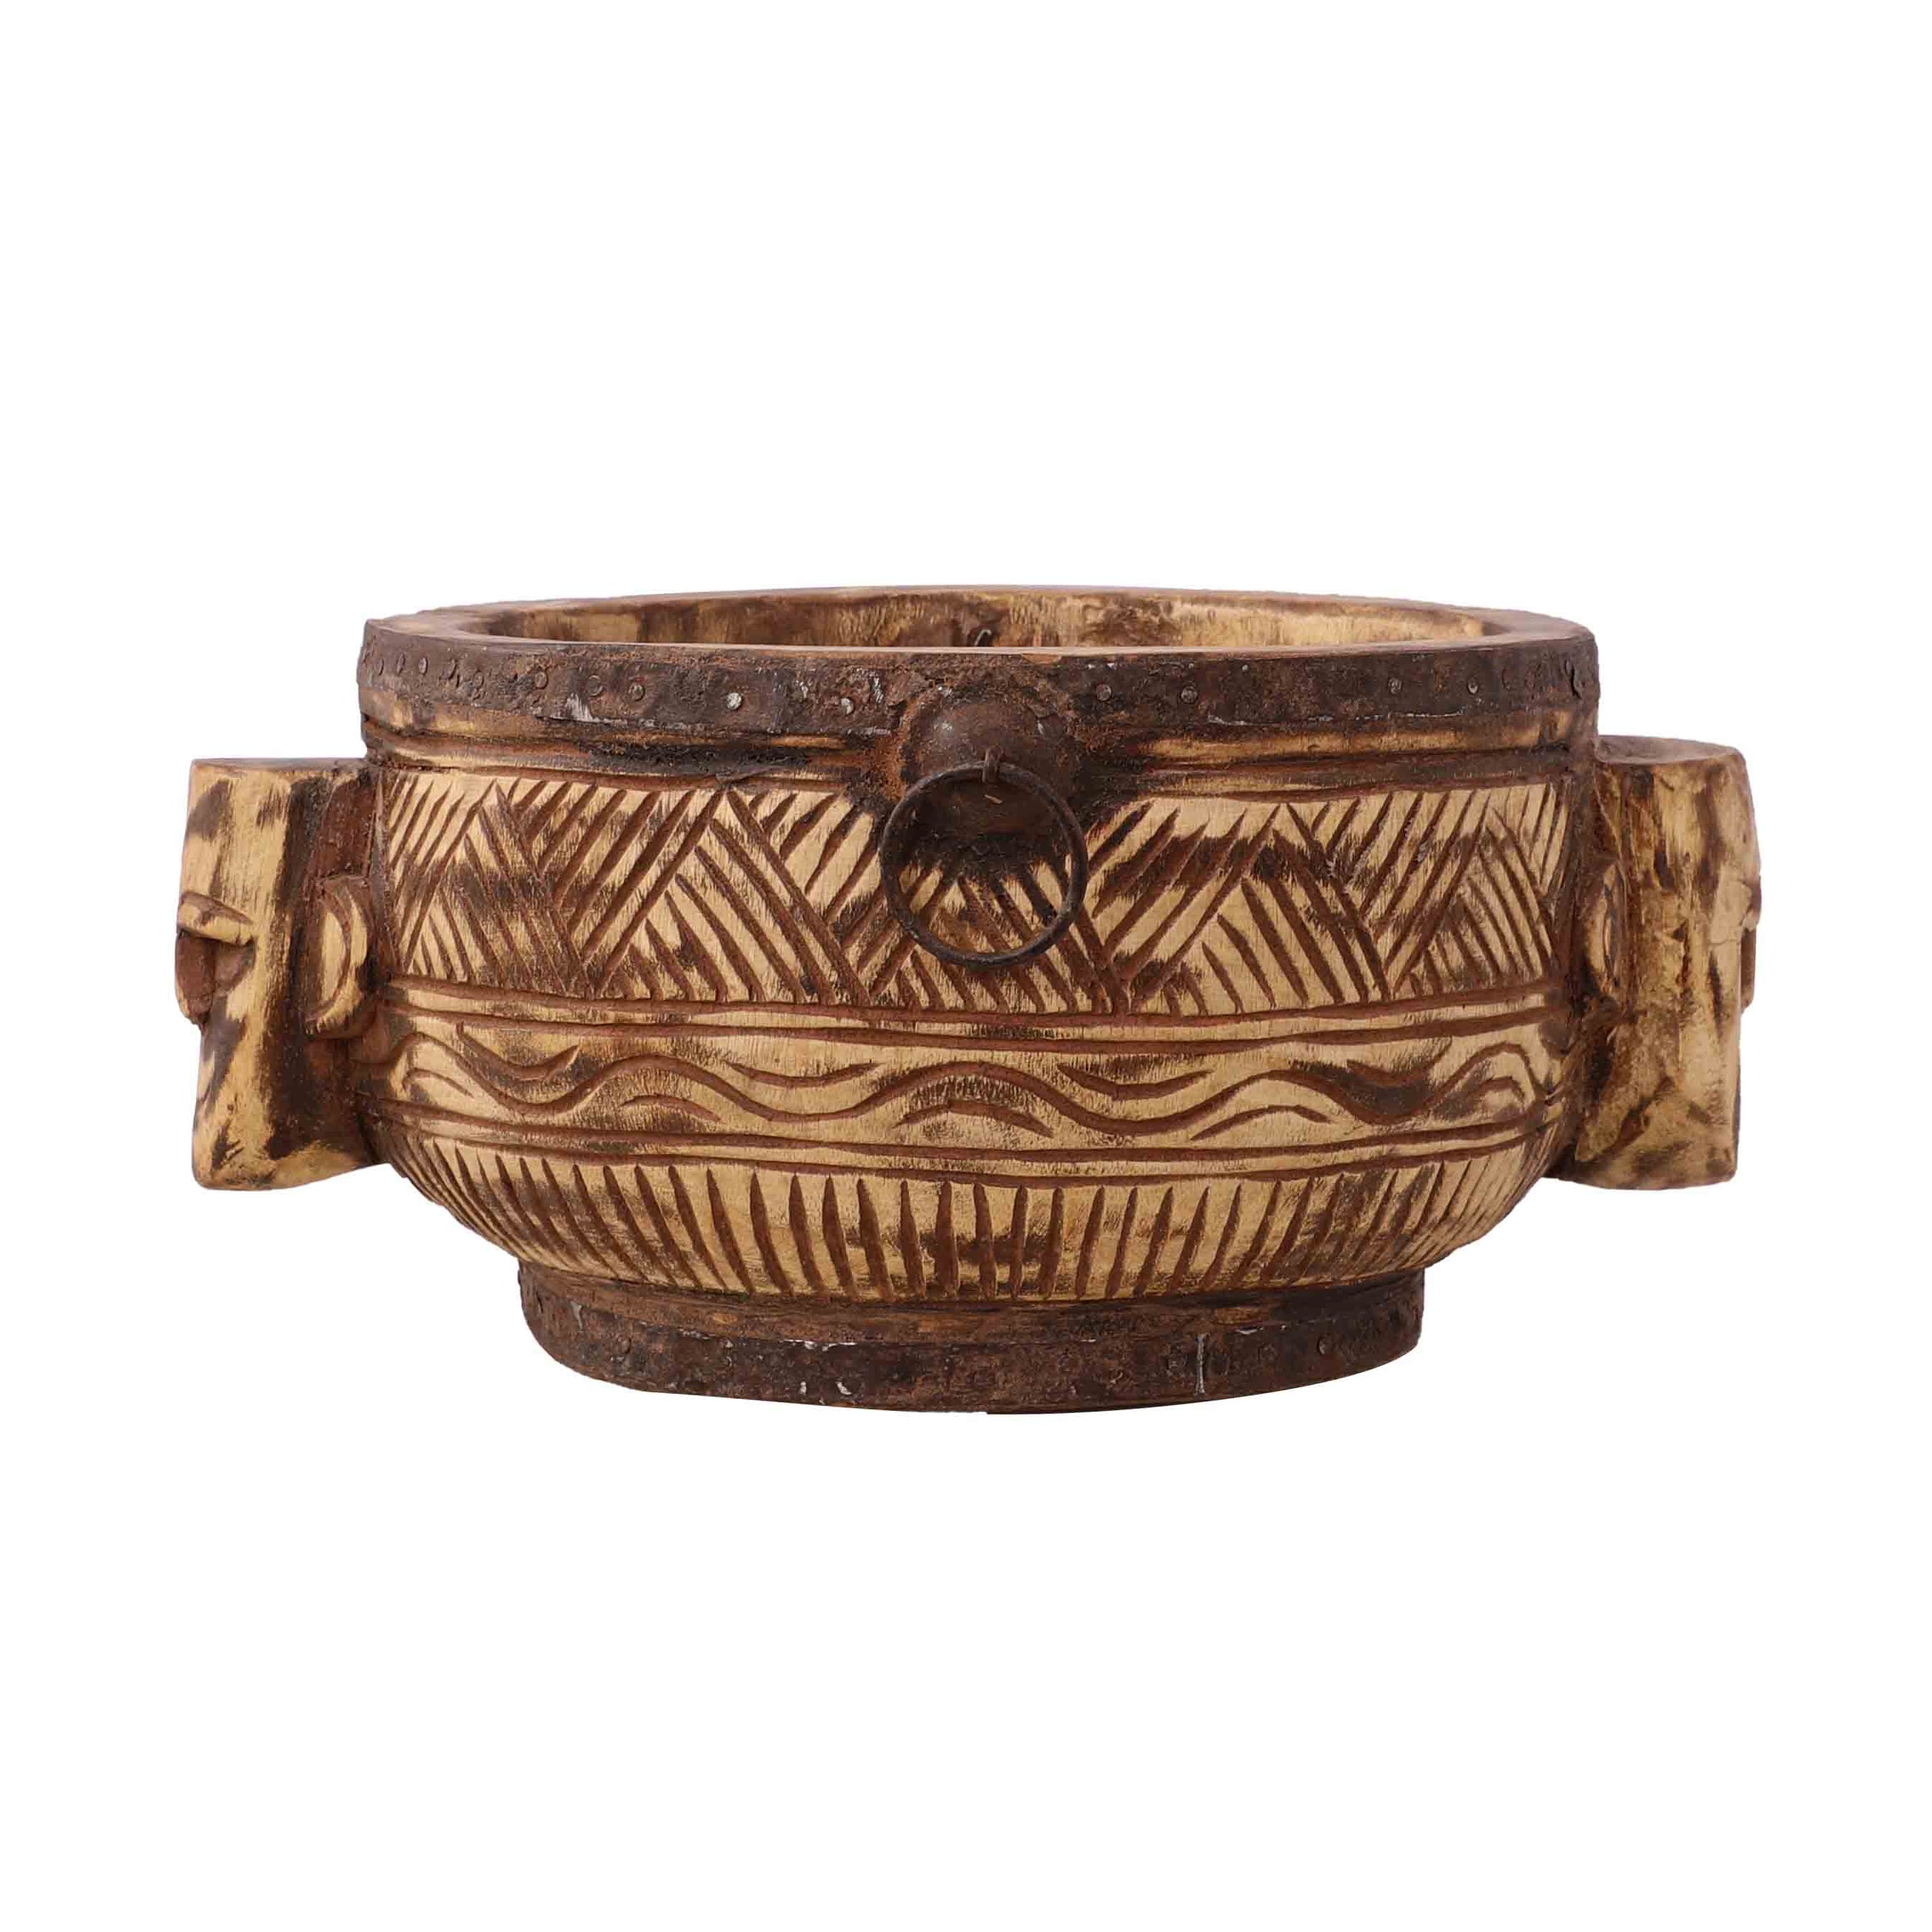 Antique Carved Bowl (Natural)